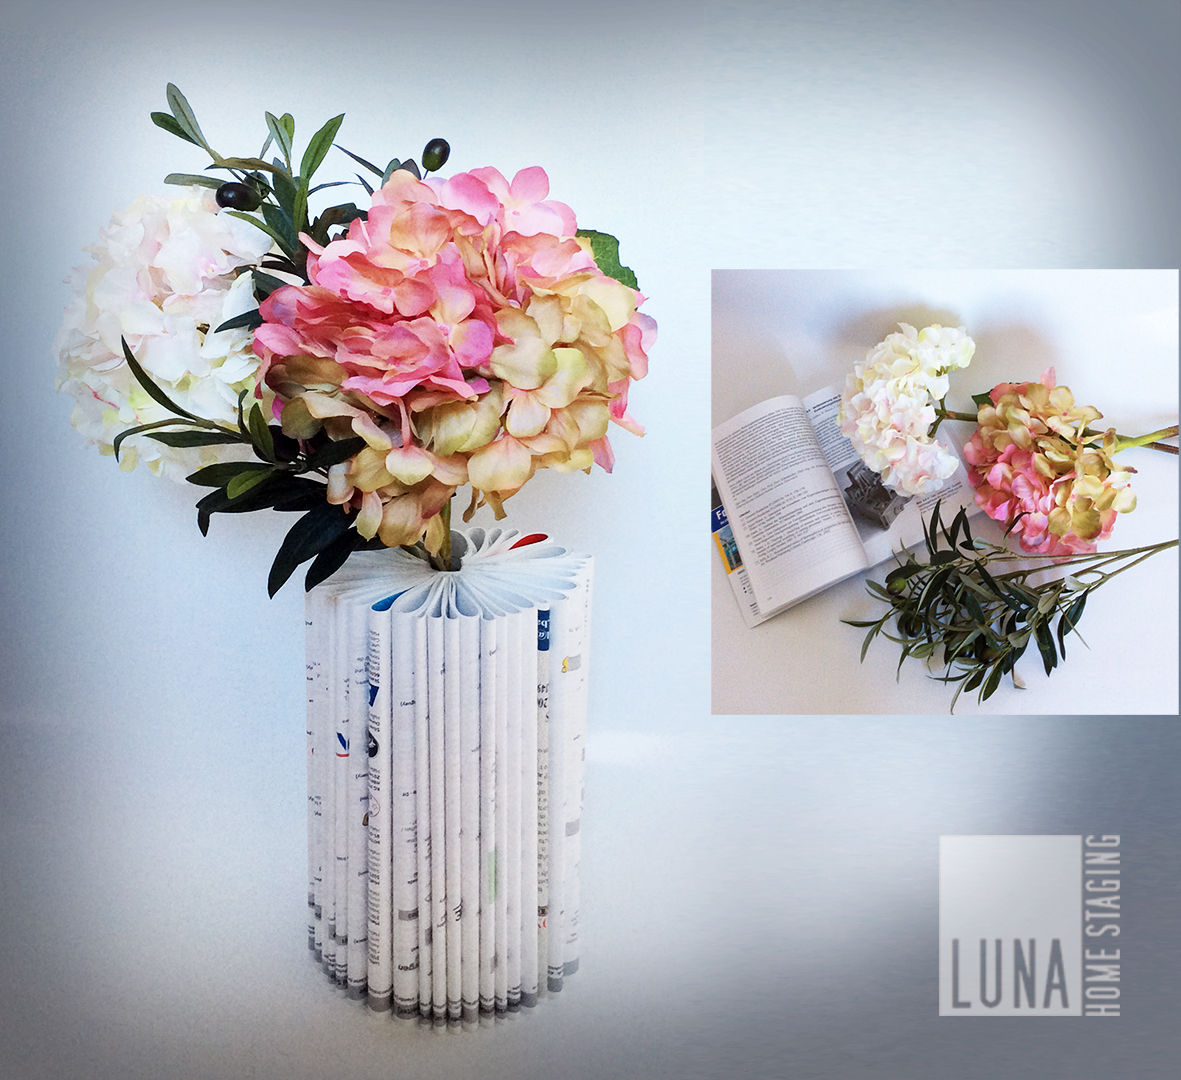 Selber machen - Book Vase, Luna Homestaging Luna Homestaging منازل